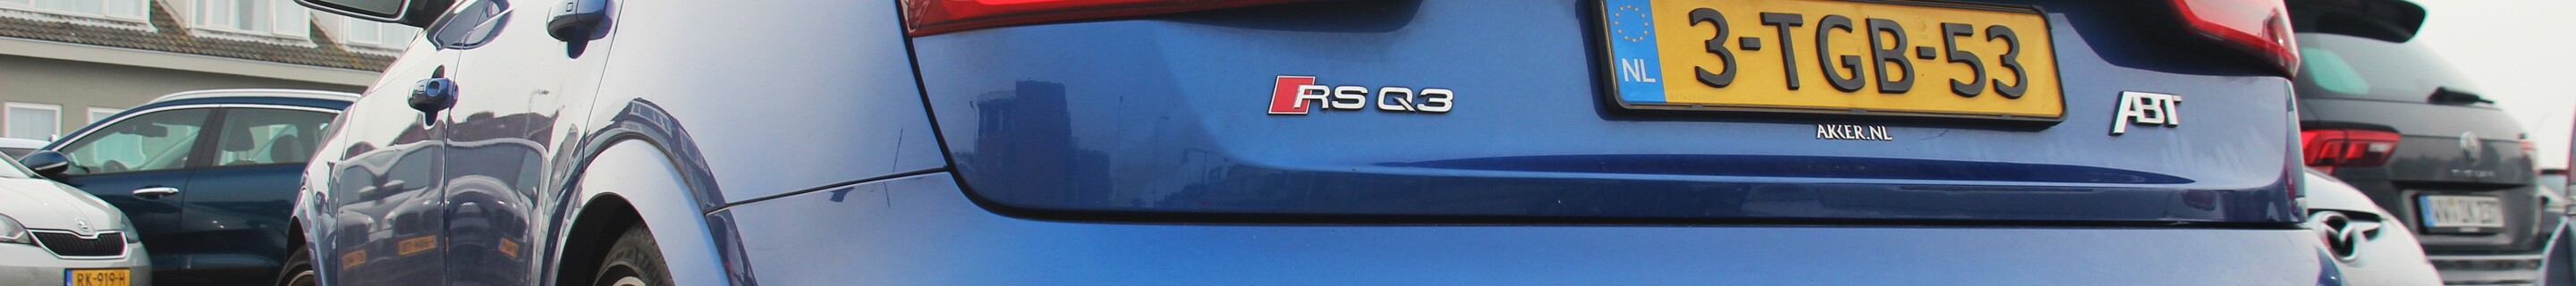 Audi ABT RS Q3 2015